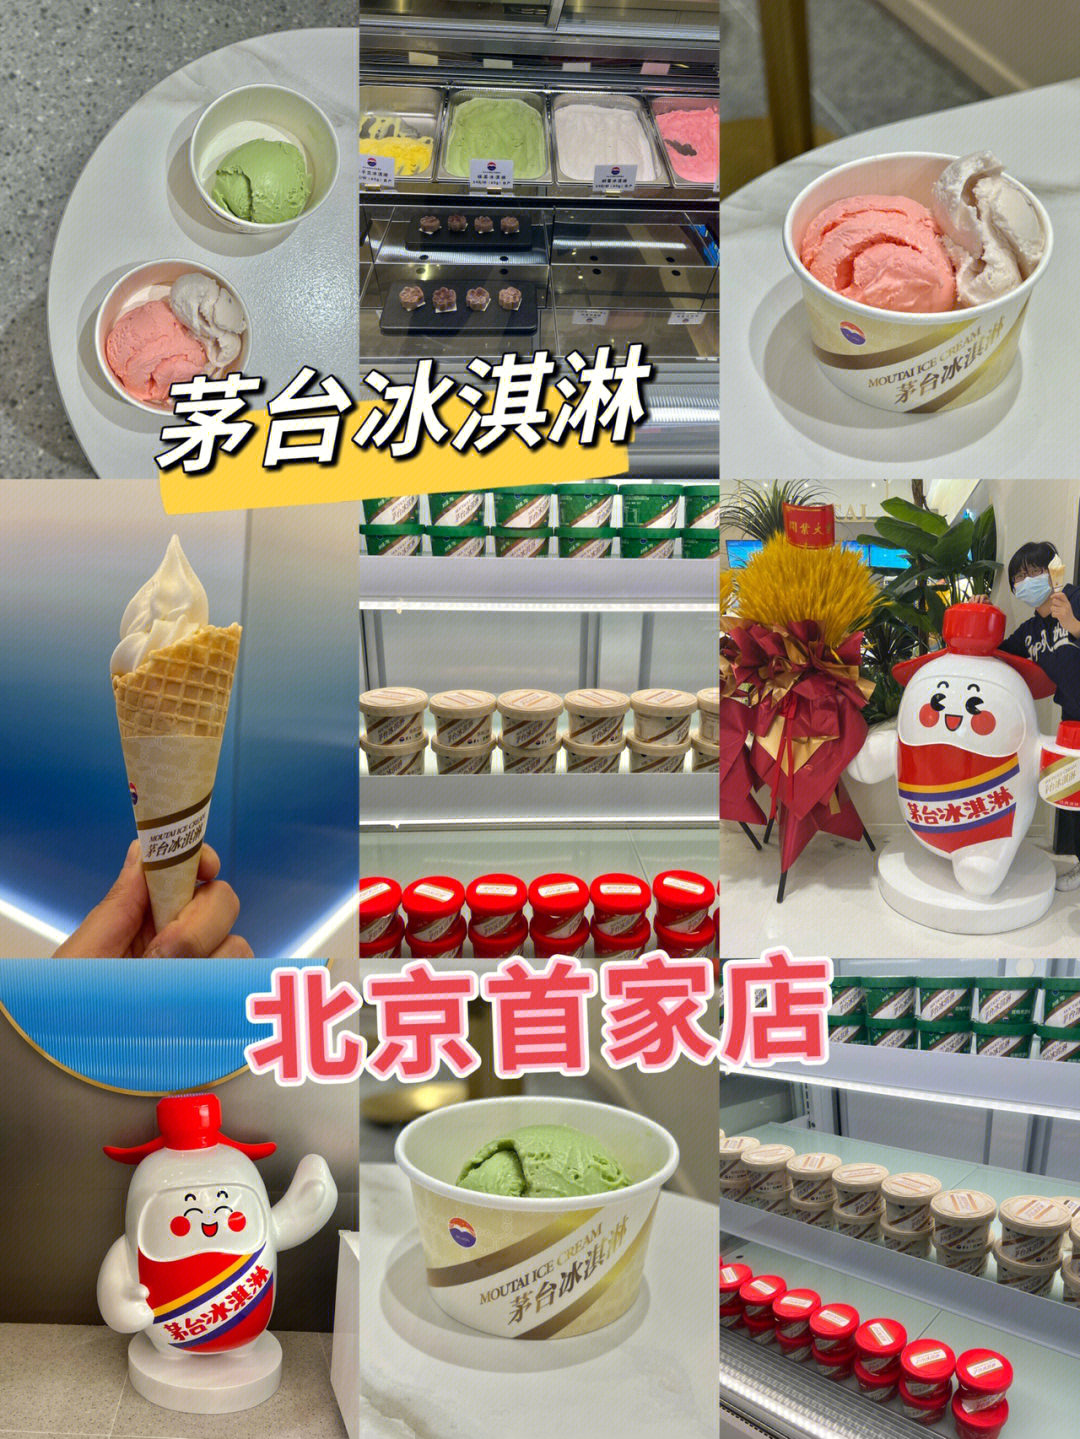 北京探店茅台冰淇淋北京首家店开业啦